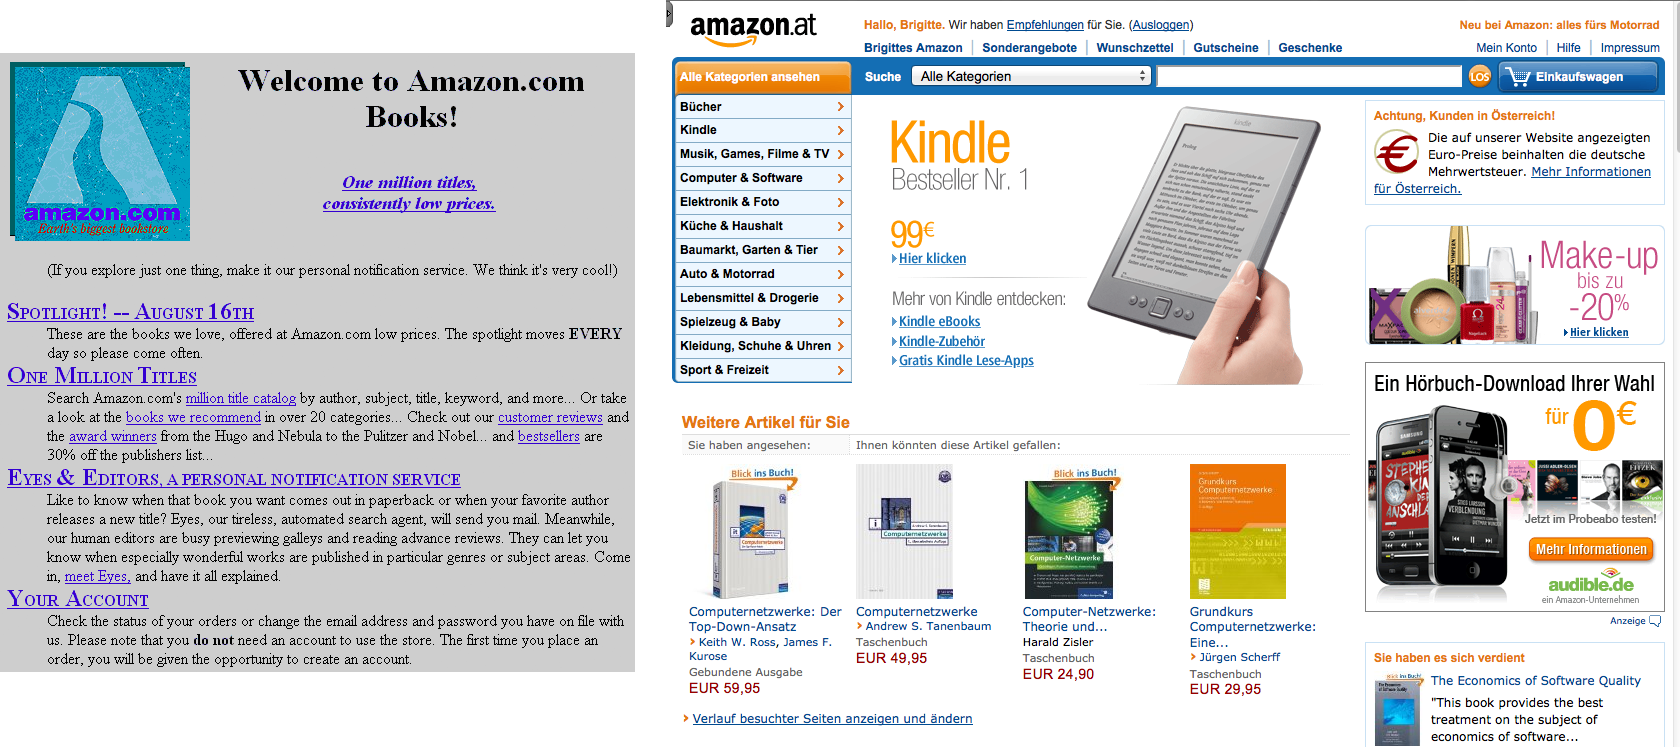 Abbildung: Buchhandeln im Internet: Amazon 1995 und Amazon 2012